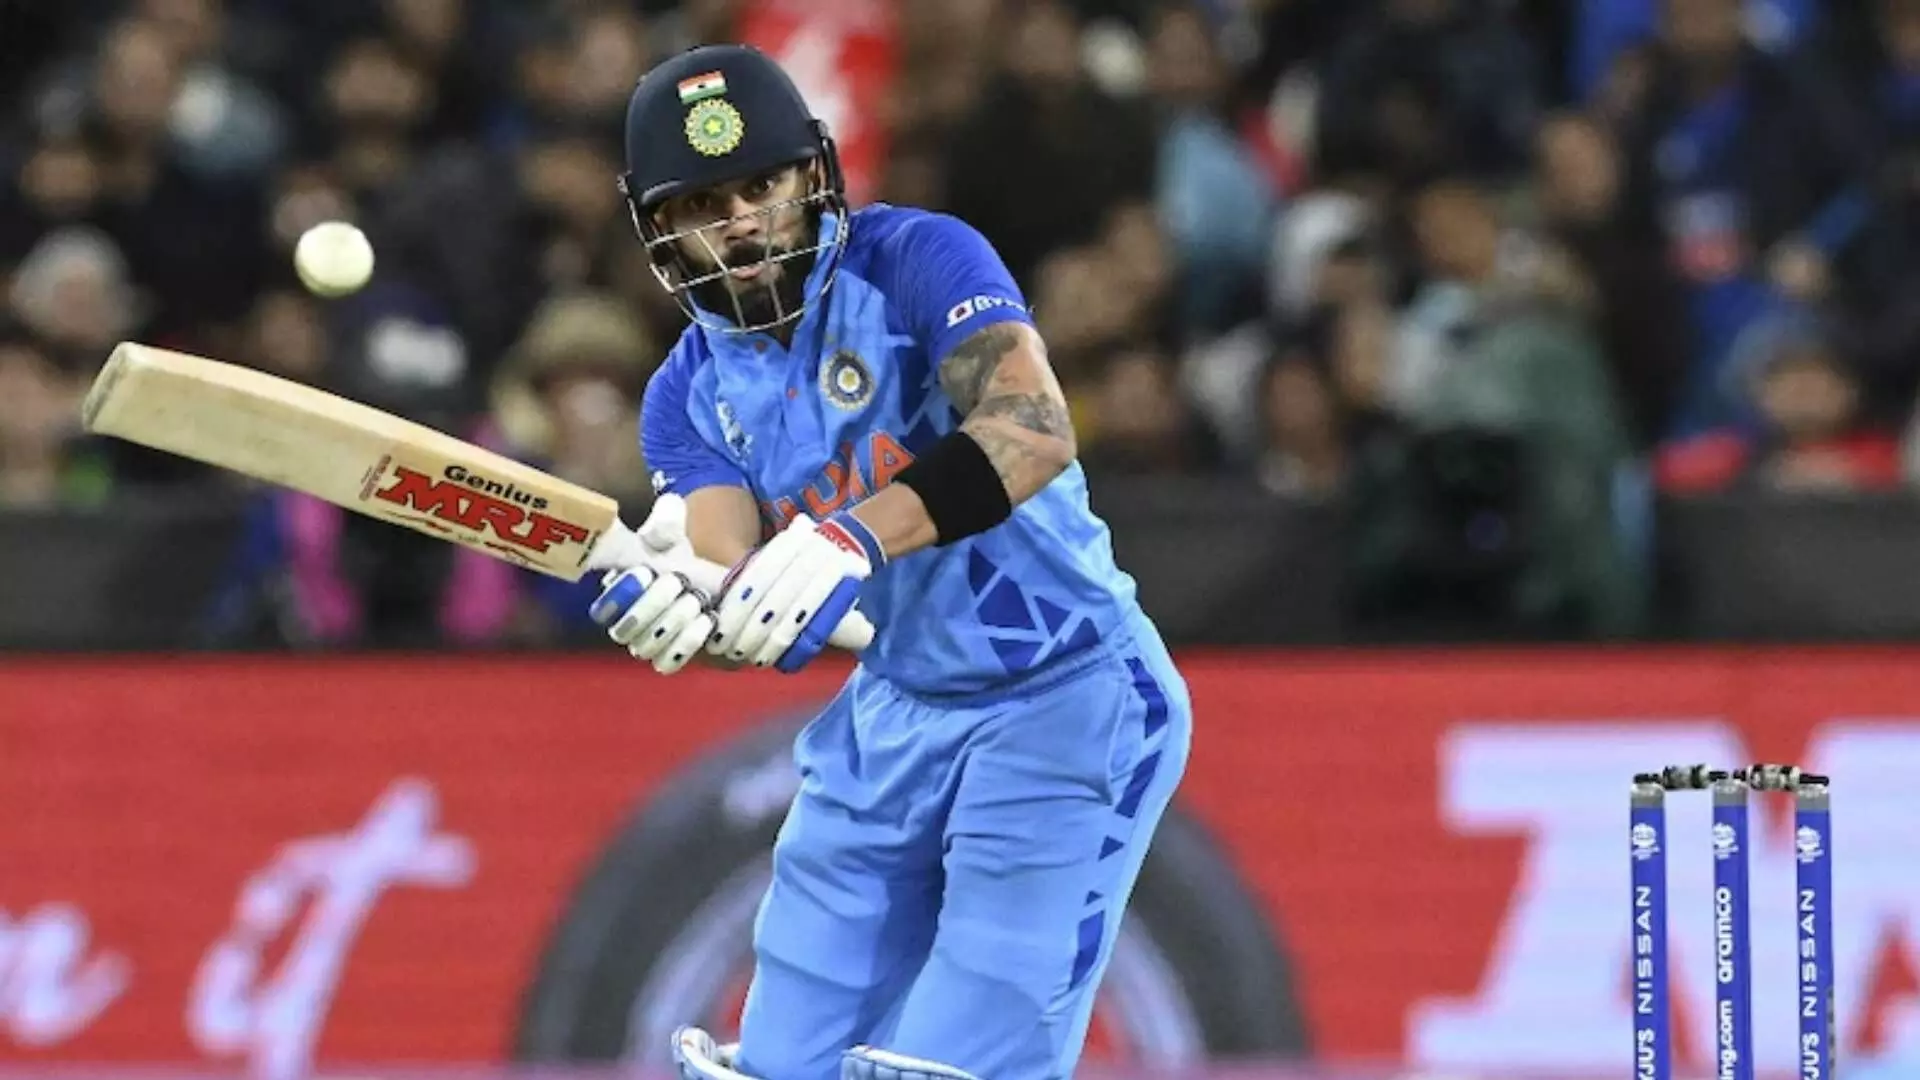 IND vs PAK T20 World Cup कोहलीच्या आतषबाजीने मेलबर्नमध्ये भारताचा विराट विजय